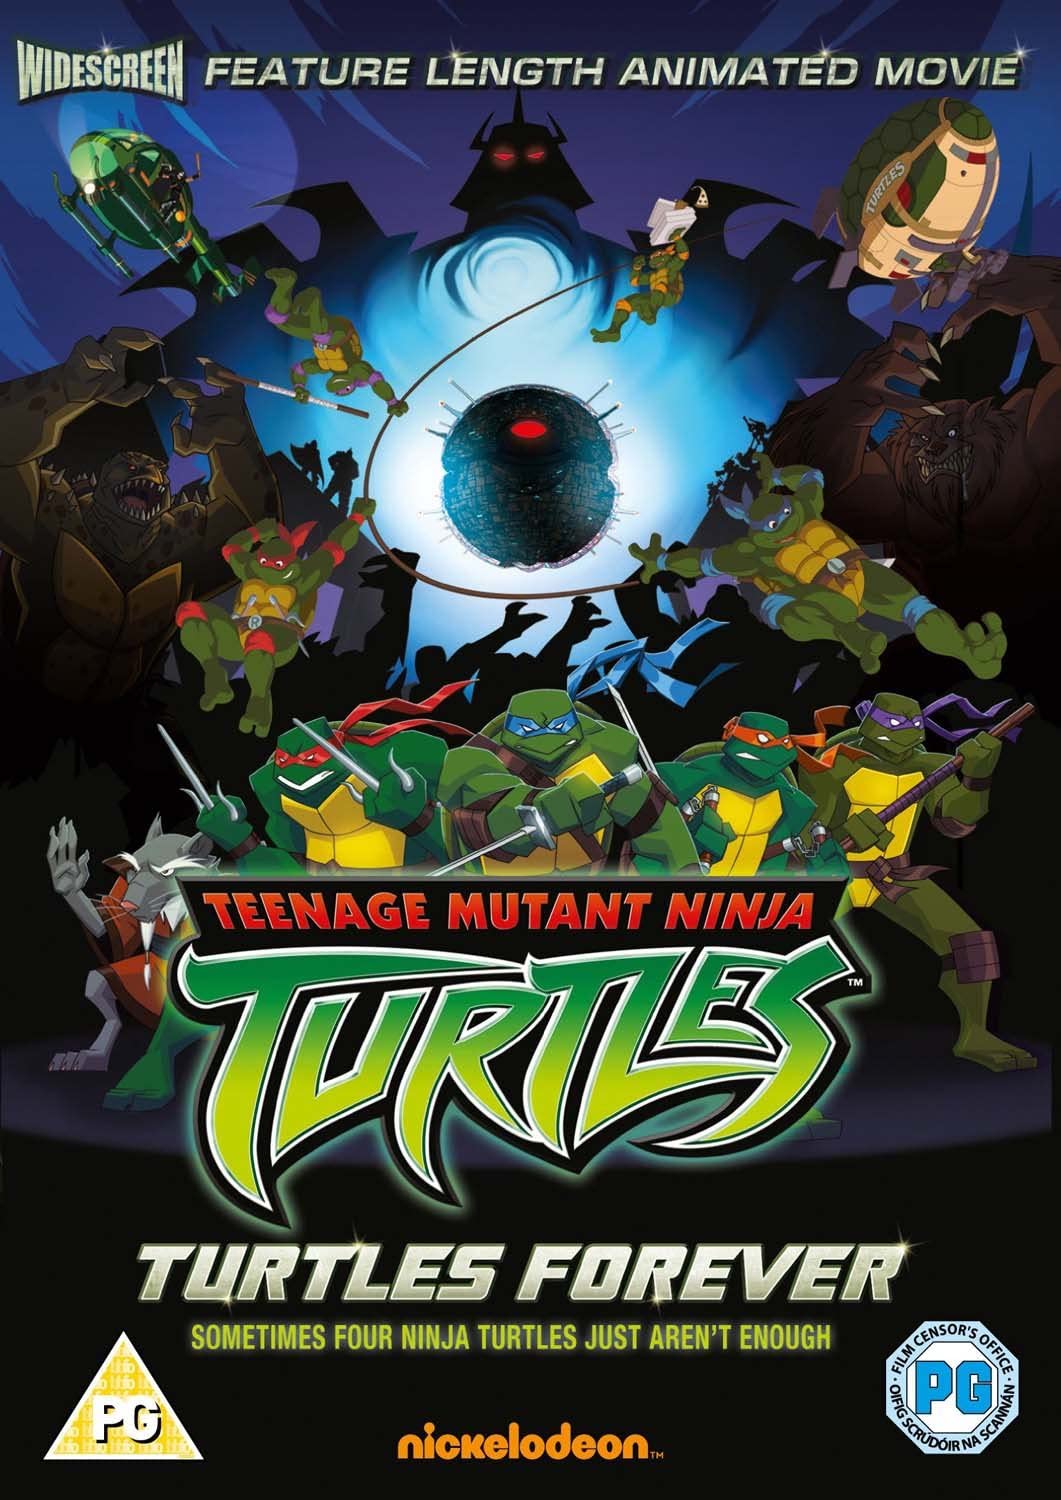 Ninja Mutant Ninja Turtles: Turtles Forever [2009] – Animation/Thriller [DVD]